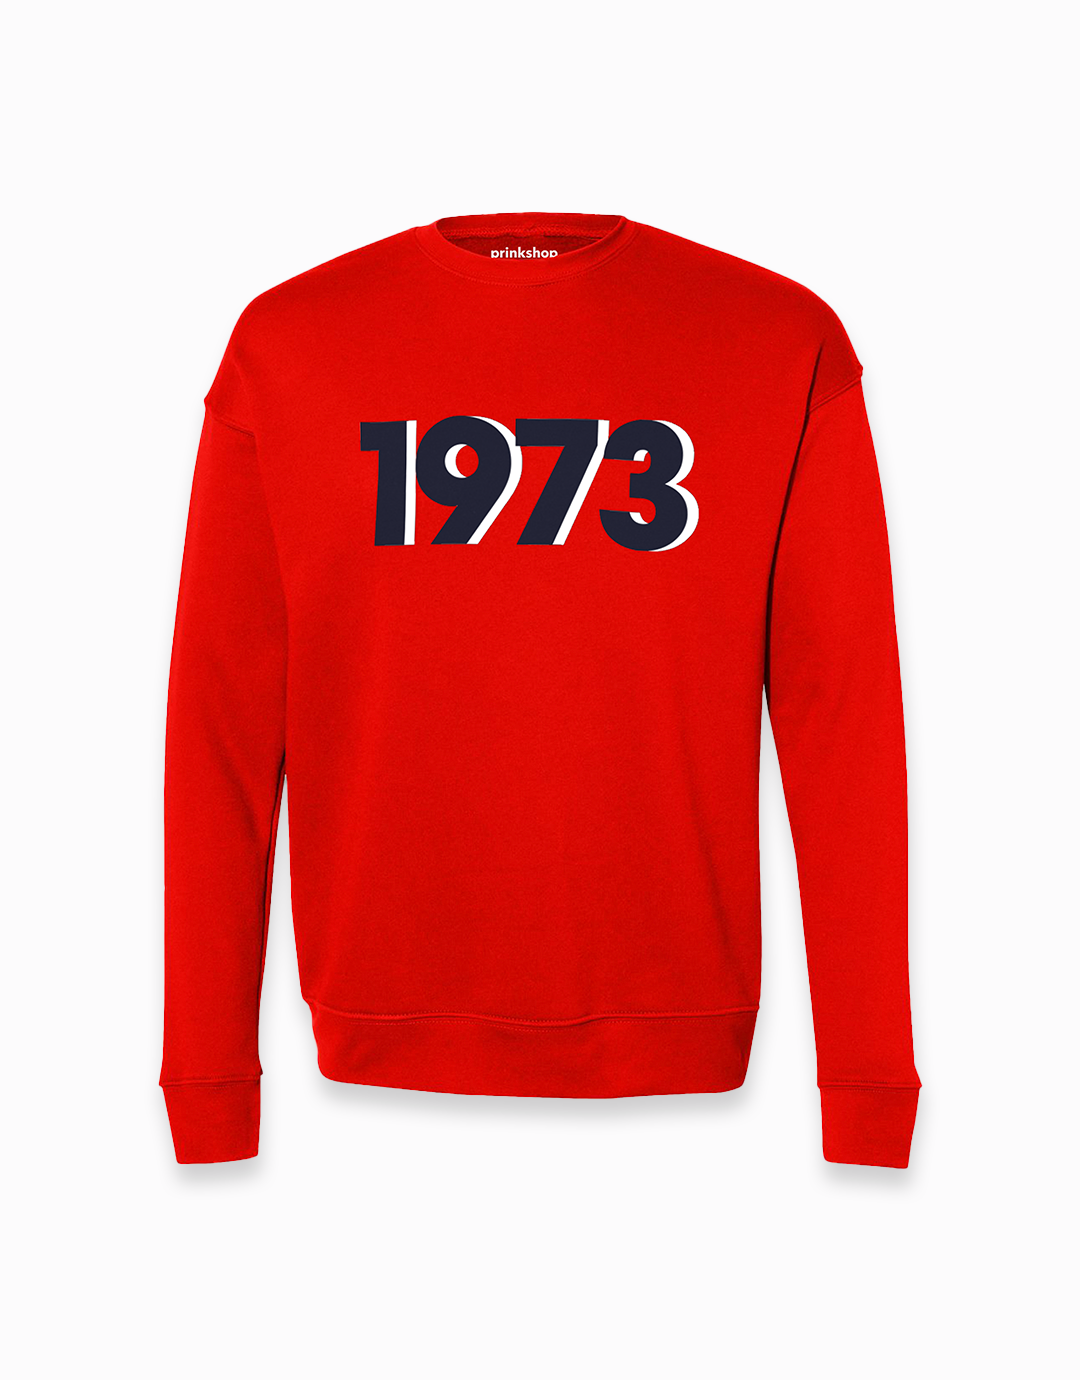 1973 sweatshirt